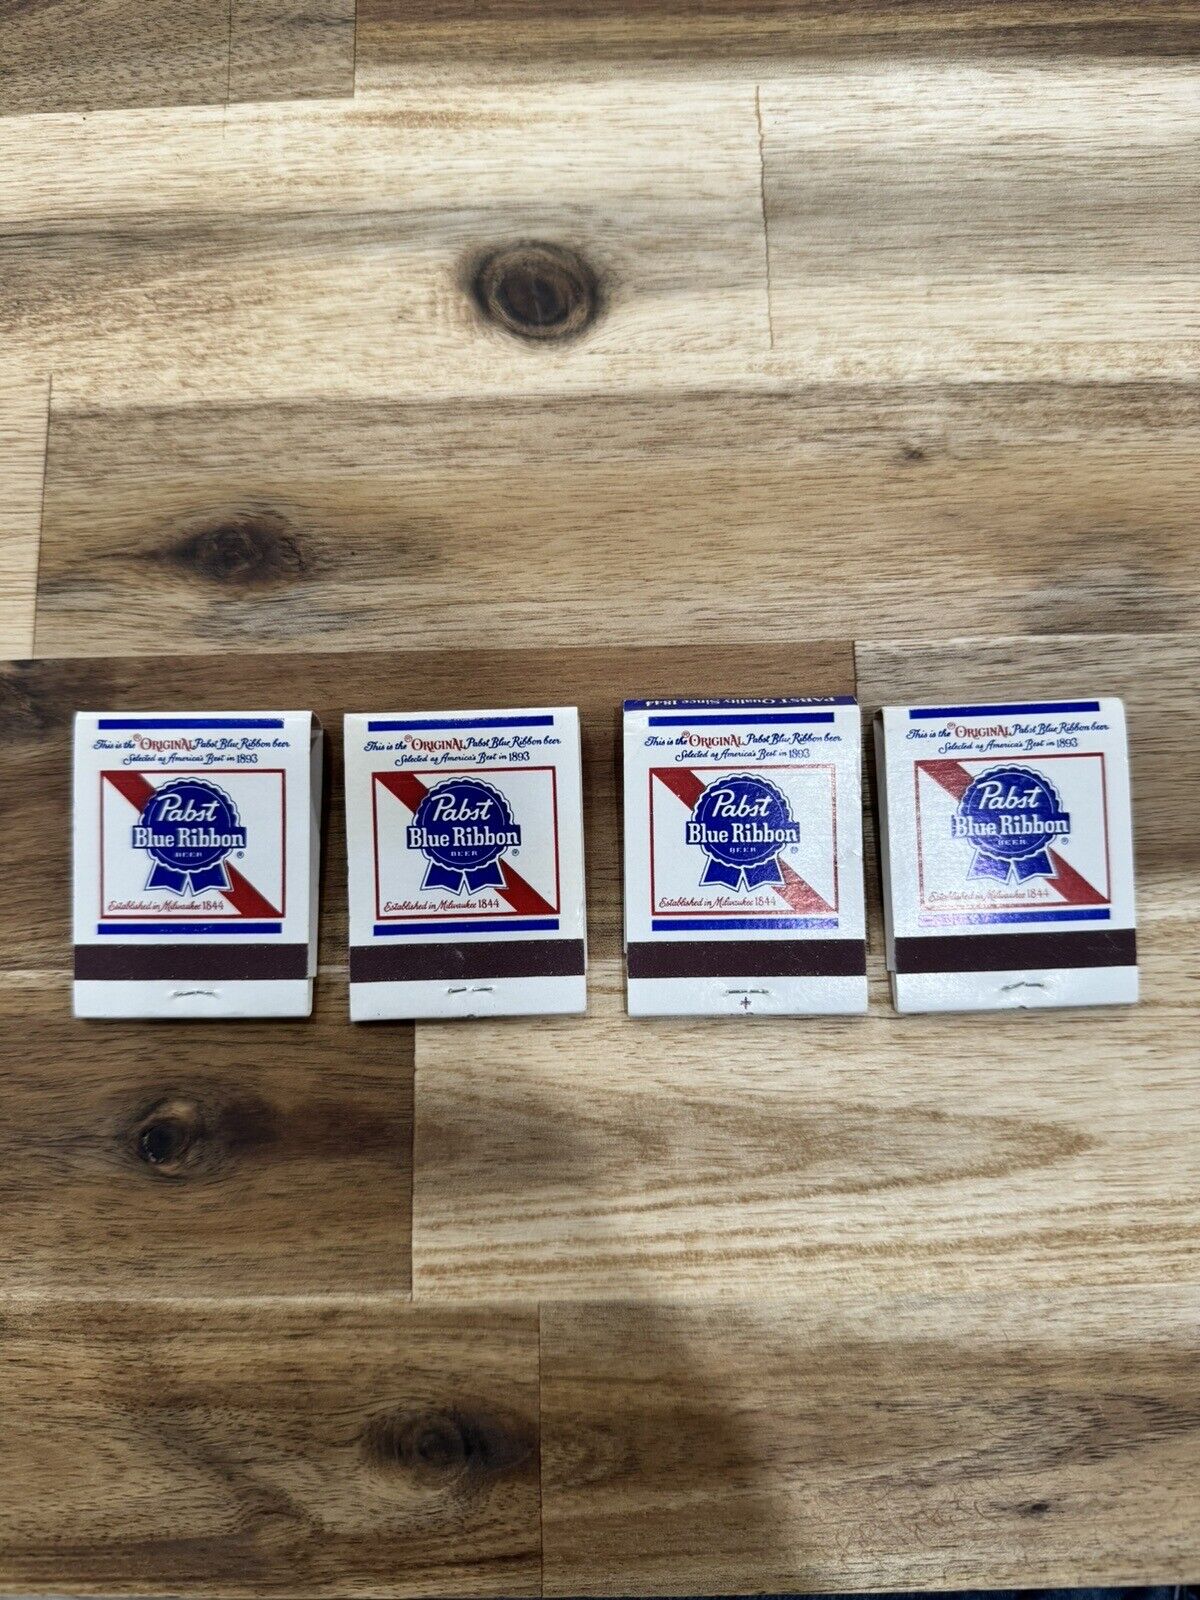 4 Vintage Matchbook Lot: “Pabst Blue Ribbon Beer” UNSTRUCK